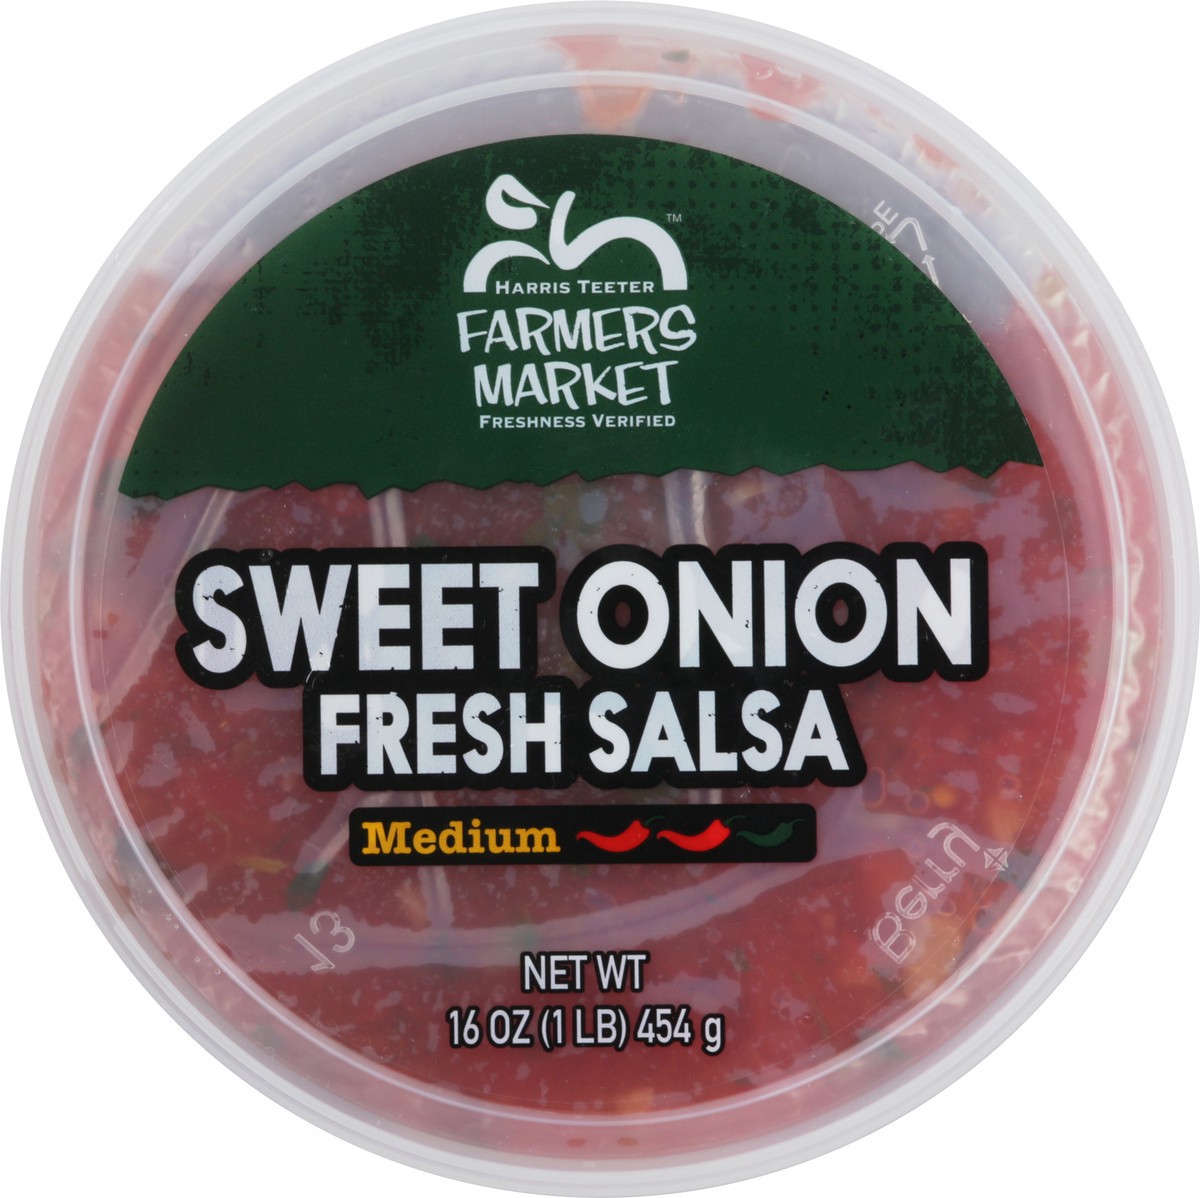 slide 9 of 9, Farmer's Market Harris Teeter Farmers Market Fresh Salsa - Sweet Onion, 16 oz